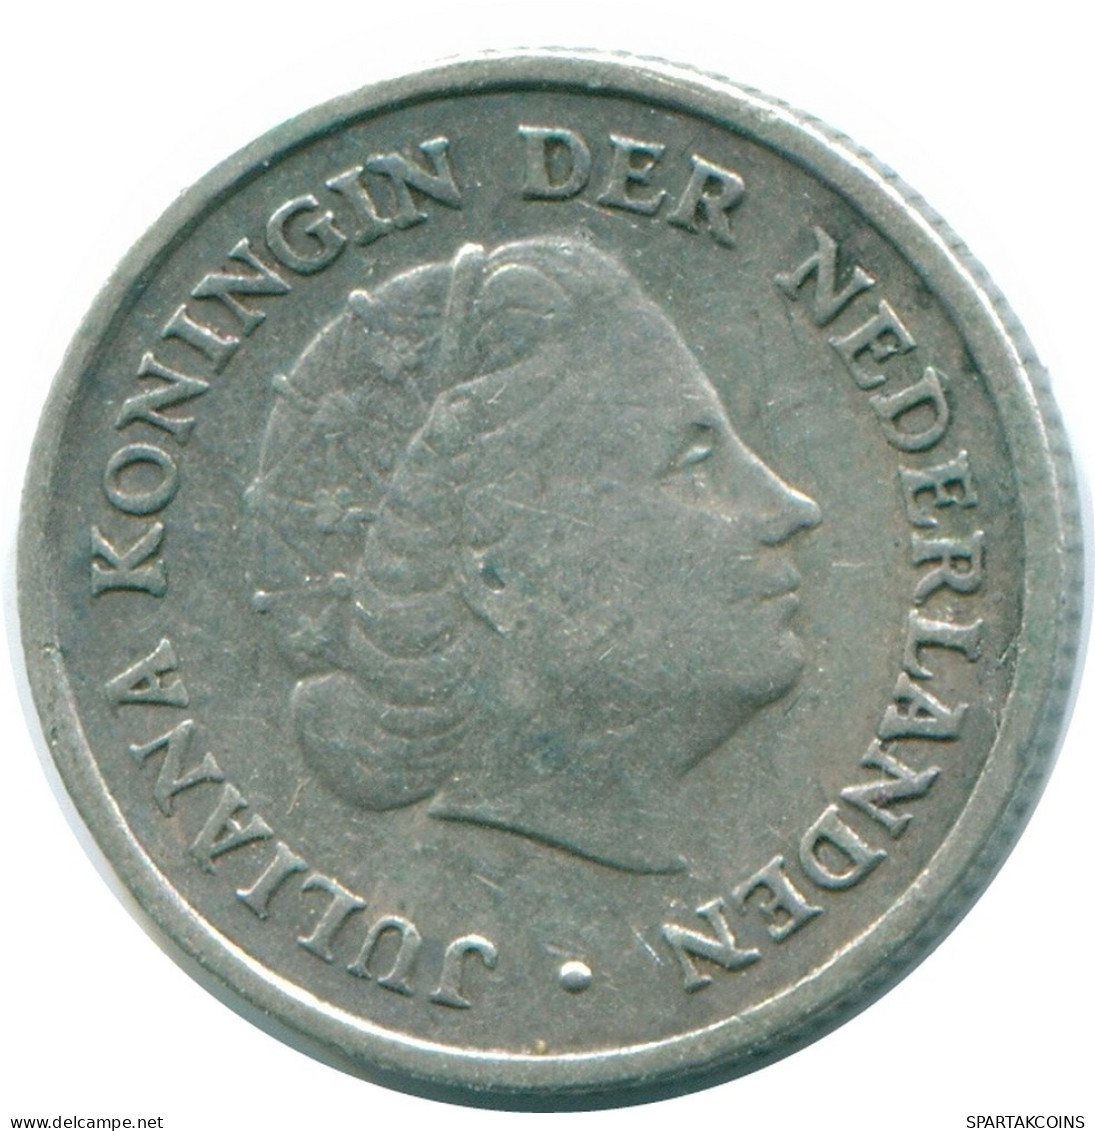 1/10 GULDEN 1957 NIEDERLÄNDISCHE ANTILLEN SILBER Koloniale Münze #NL12144.3.D.A - Antilles Néerlandaises